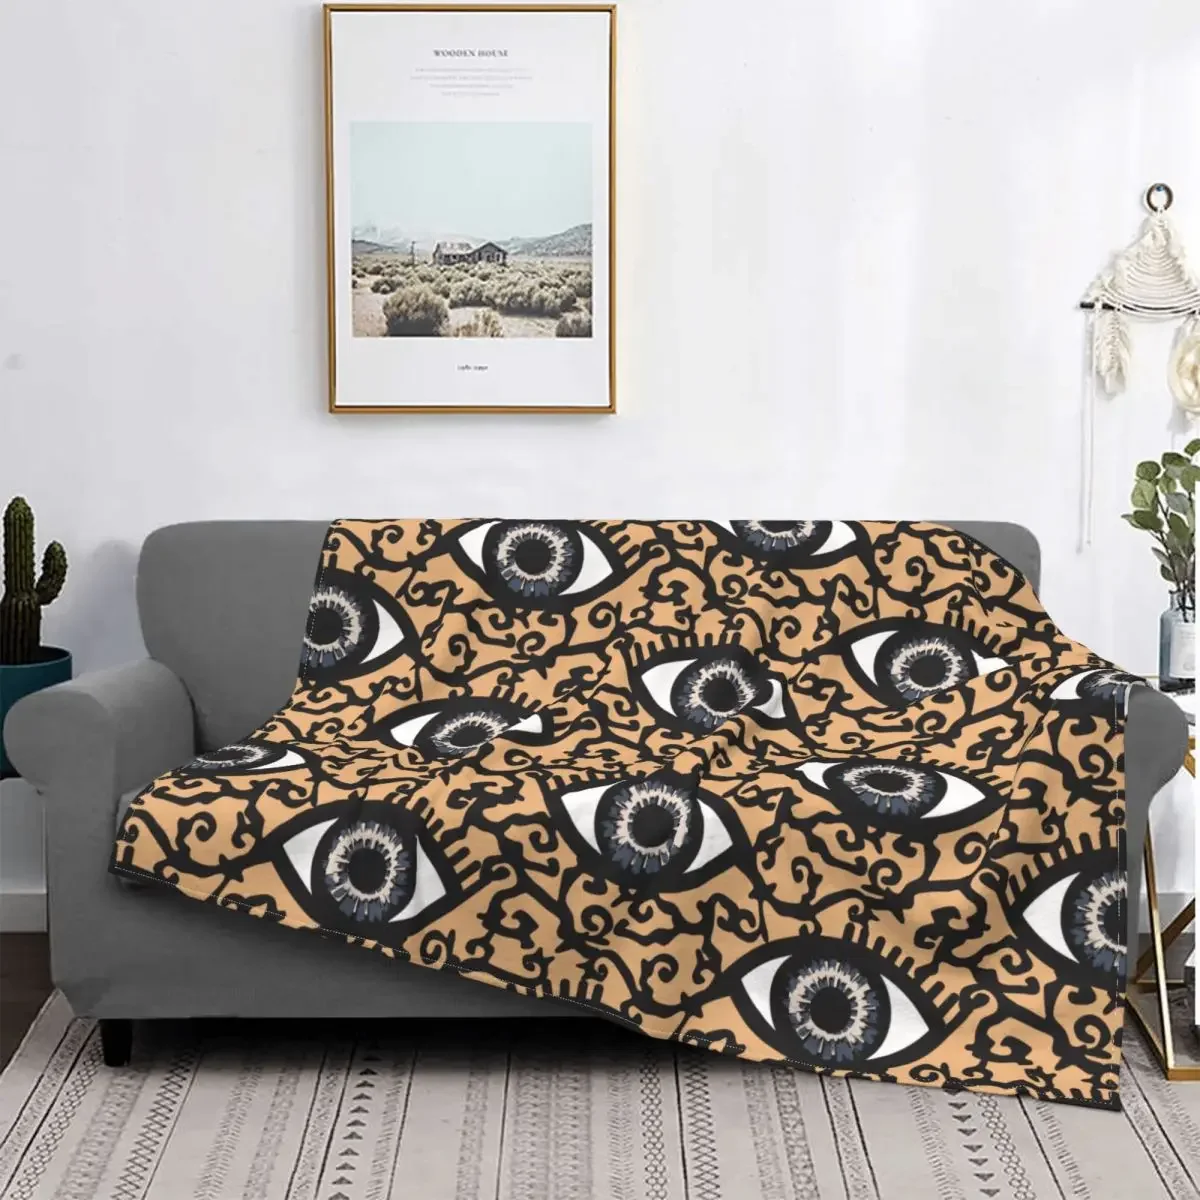 

Текстурированное одеяло с глазами на бежевом фоне, Фланелевое текстильное декоративное портативное легкое одеяло для постельного белья, предметы одежды